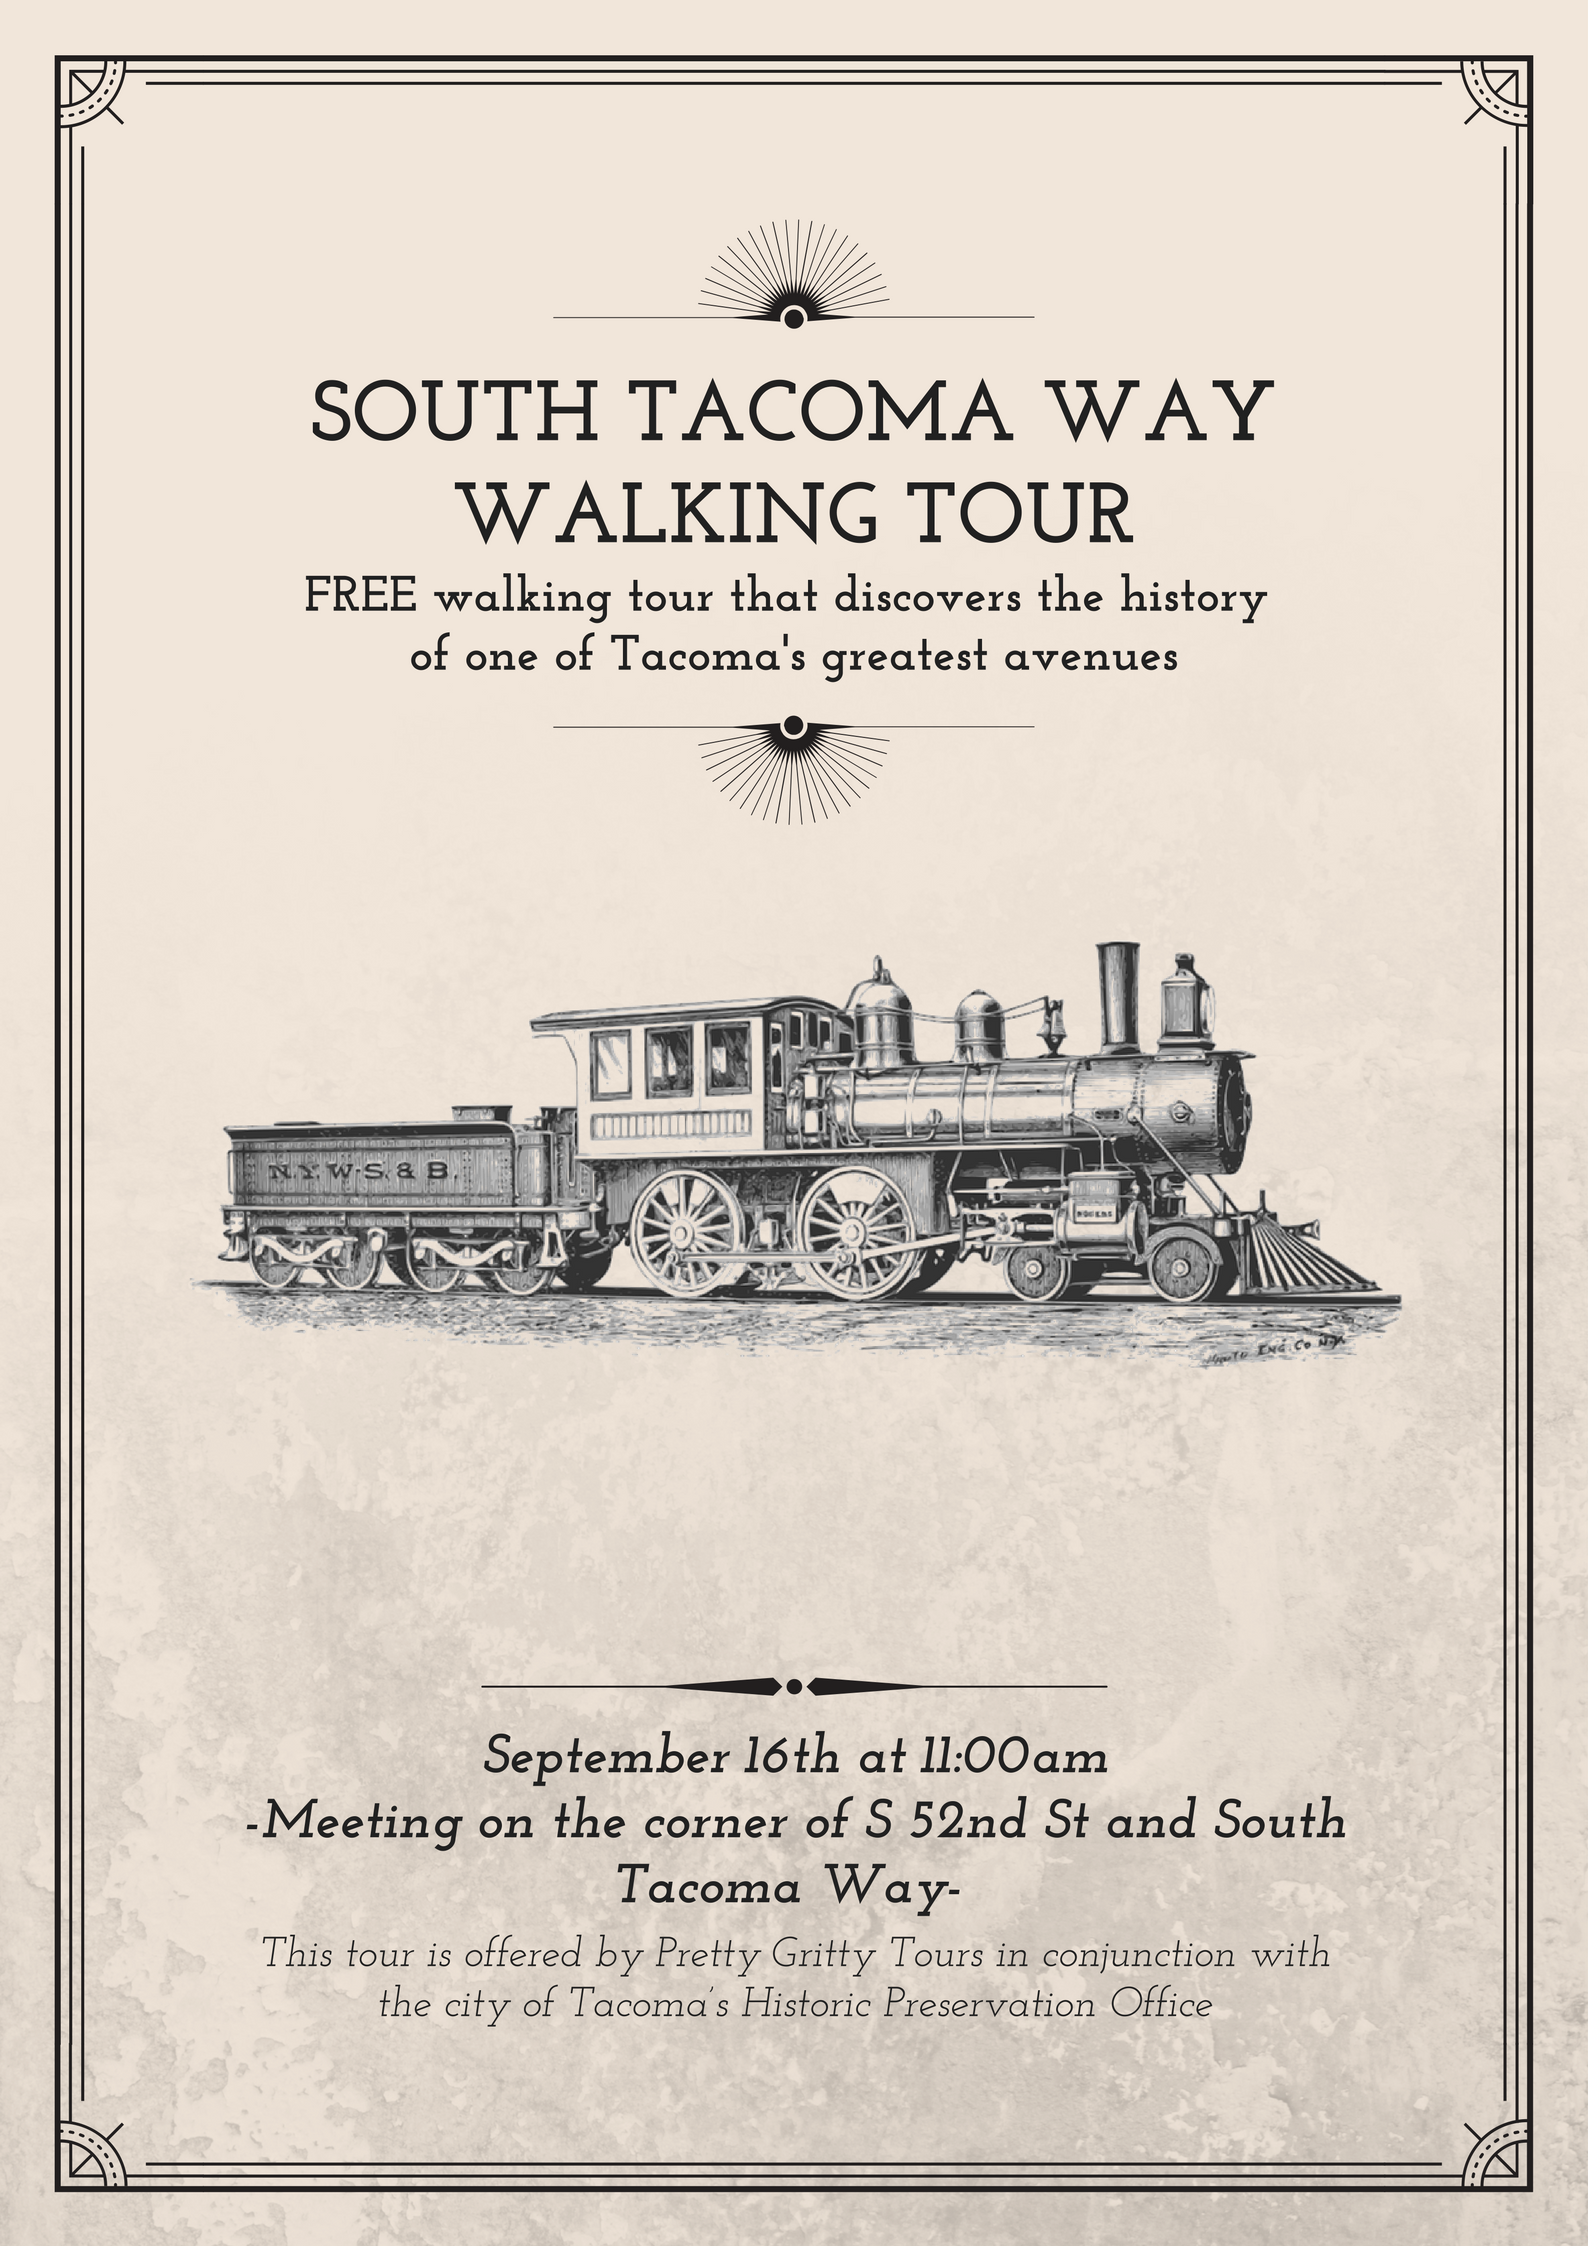 South Tacoma Way